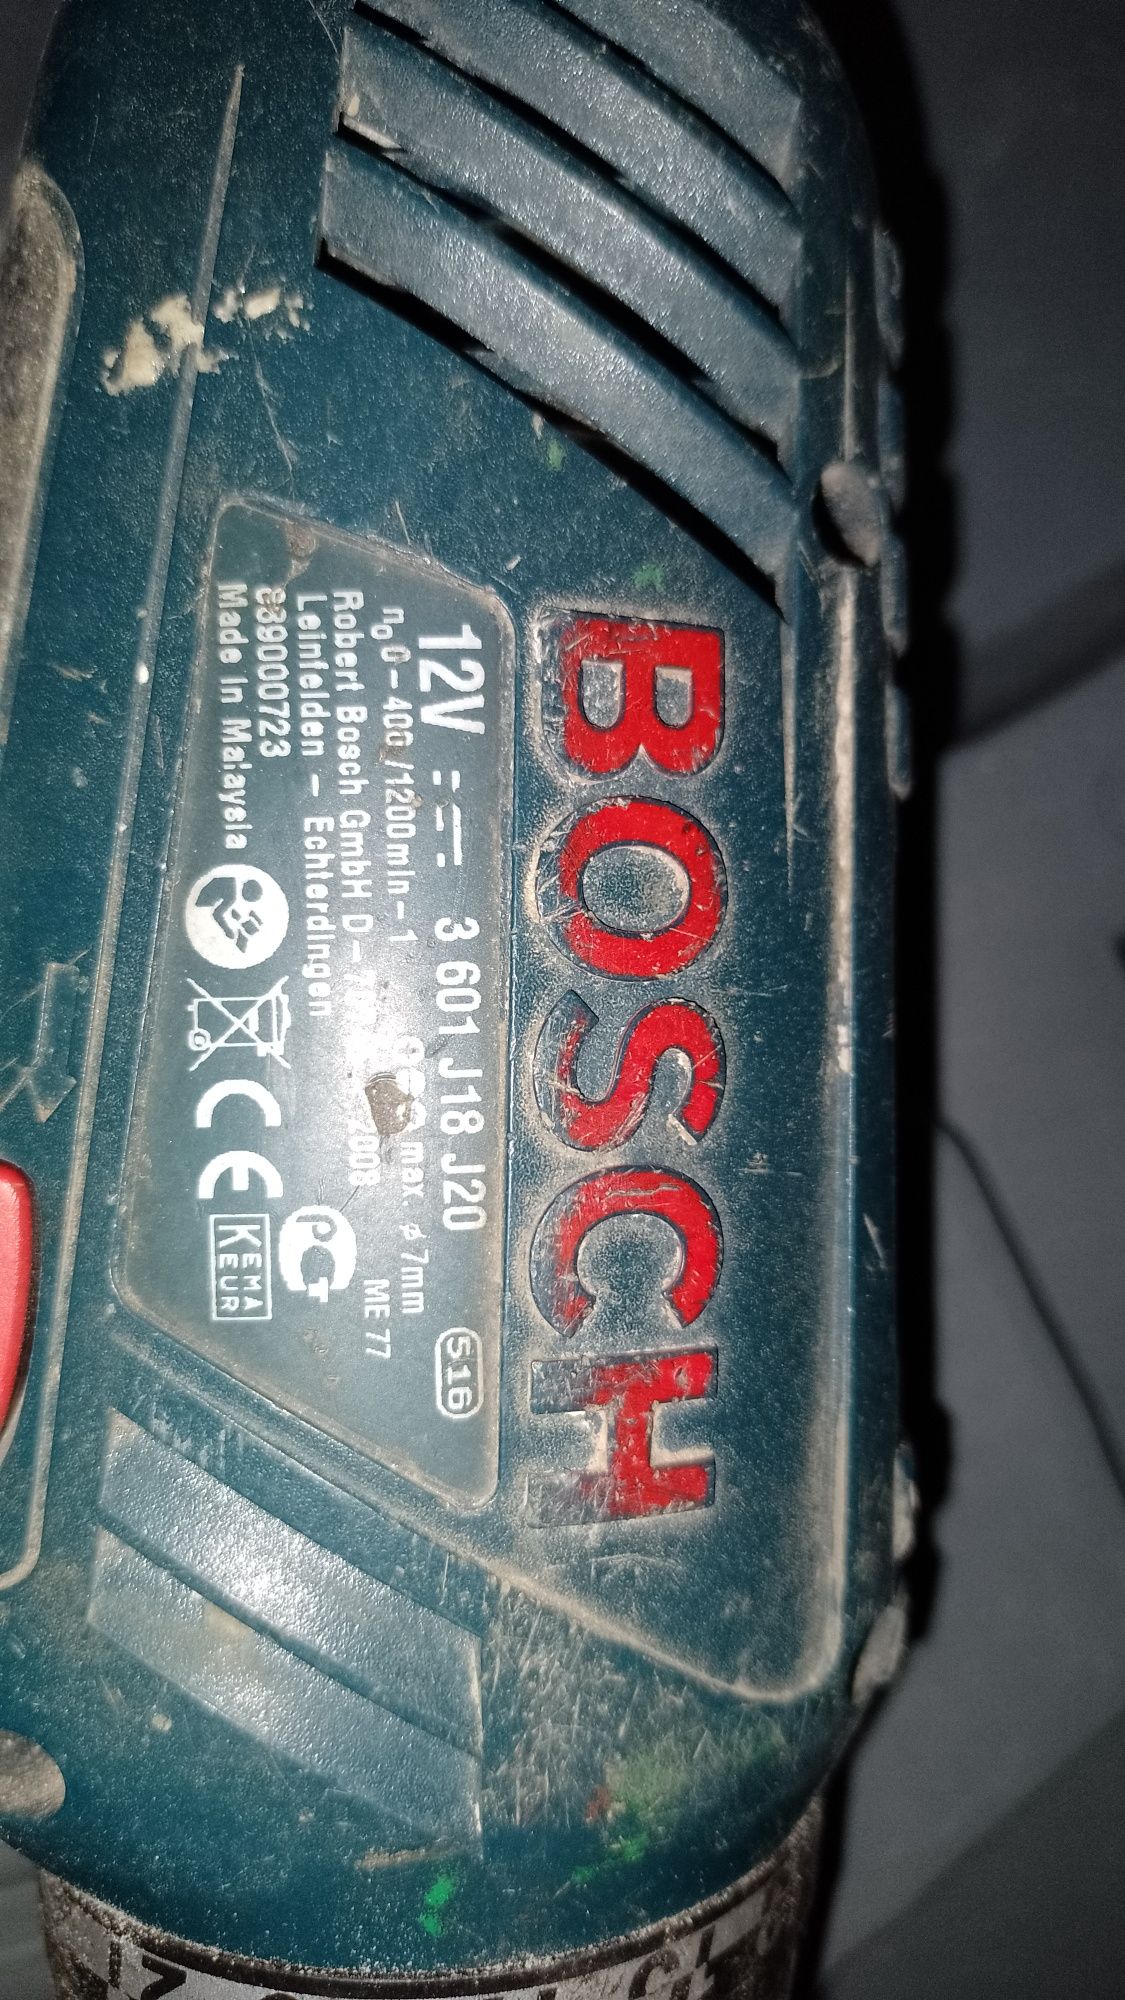 Wkrętarka akumulatorowa GSR 12-2 Bosch 12v